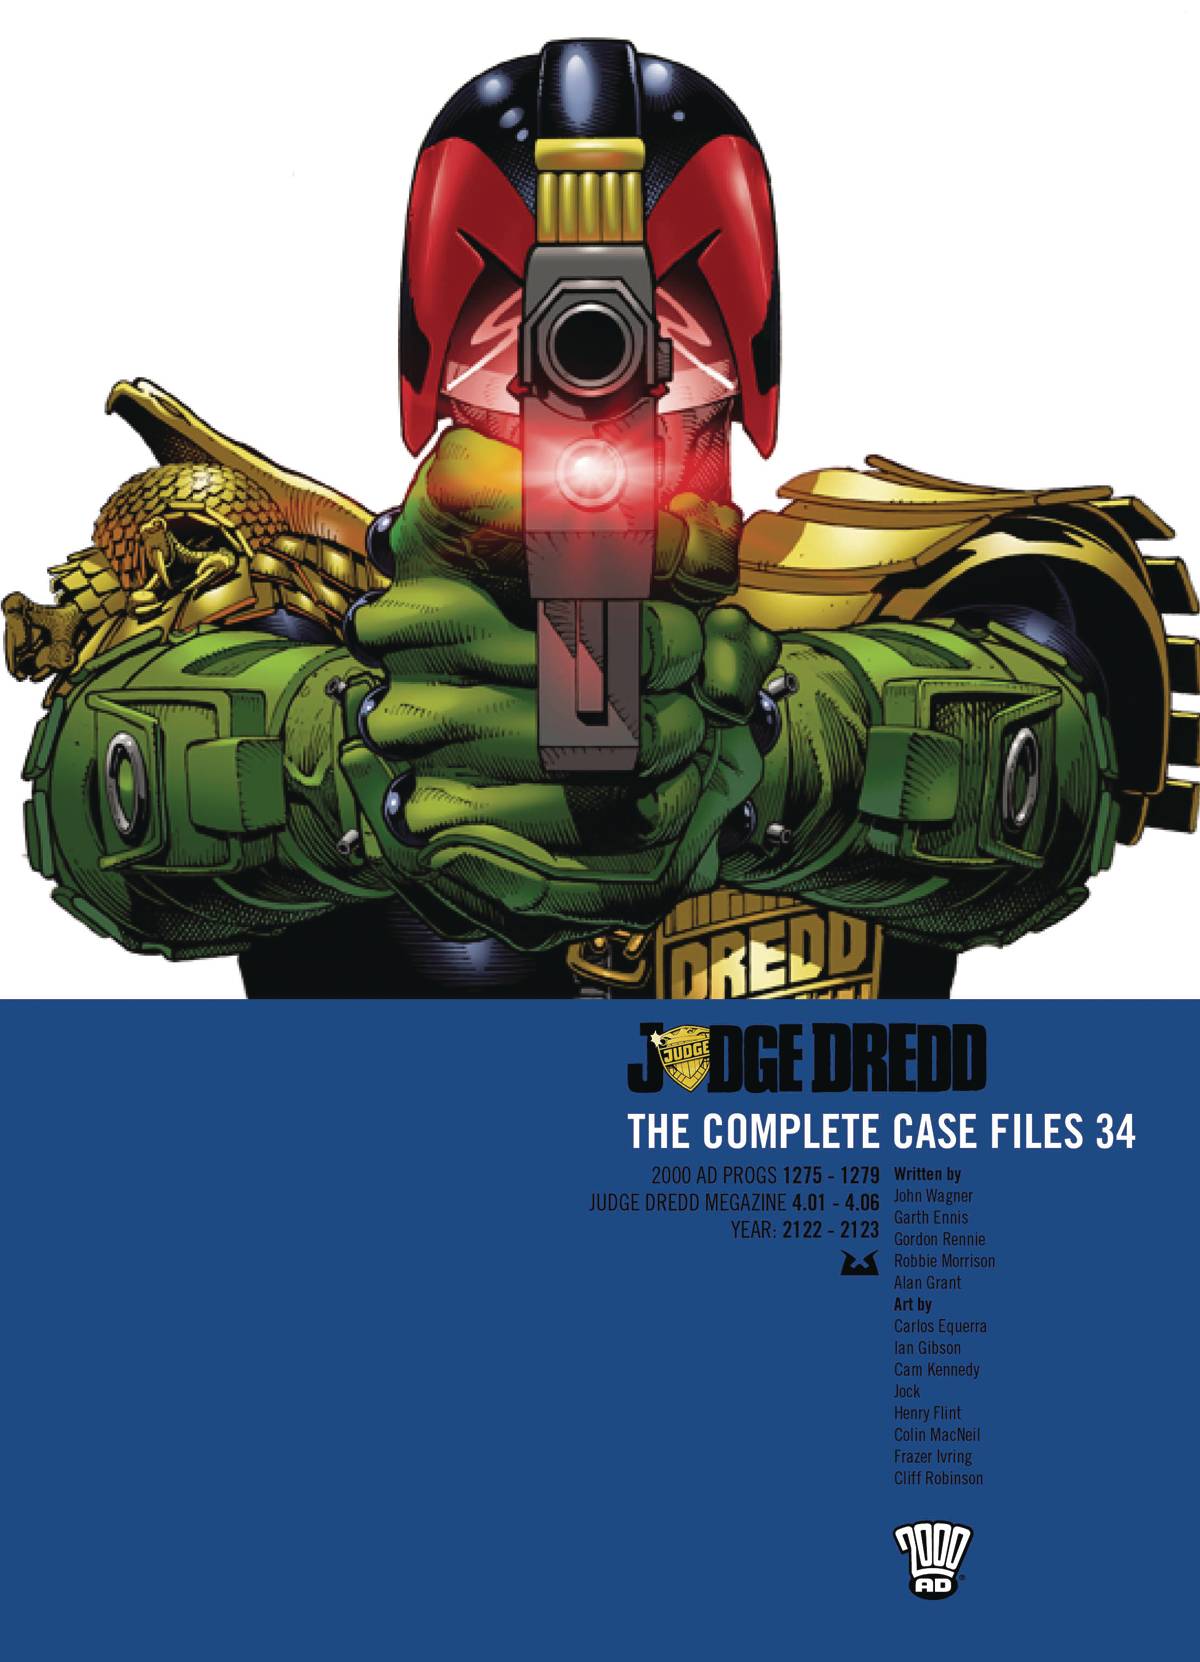 Judge Dredd The Complete Case Files #34 (2019)